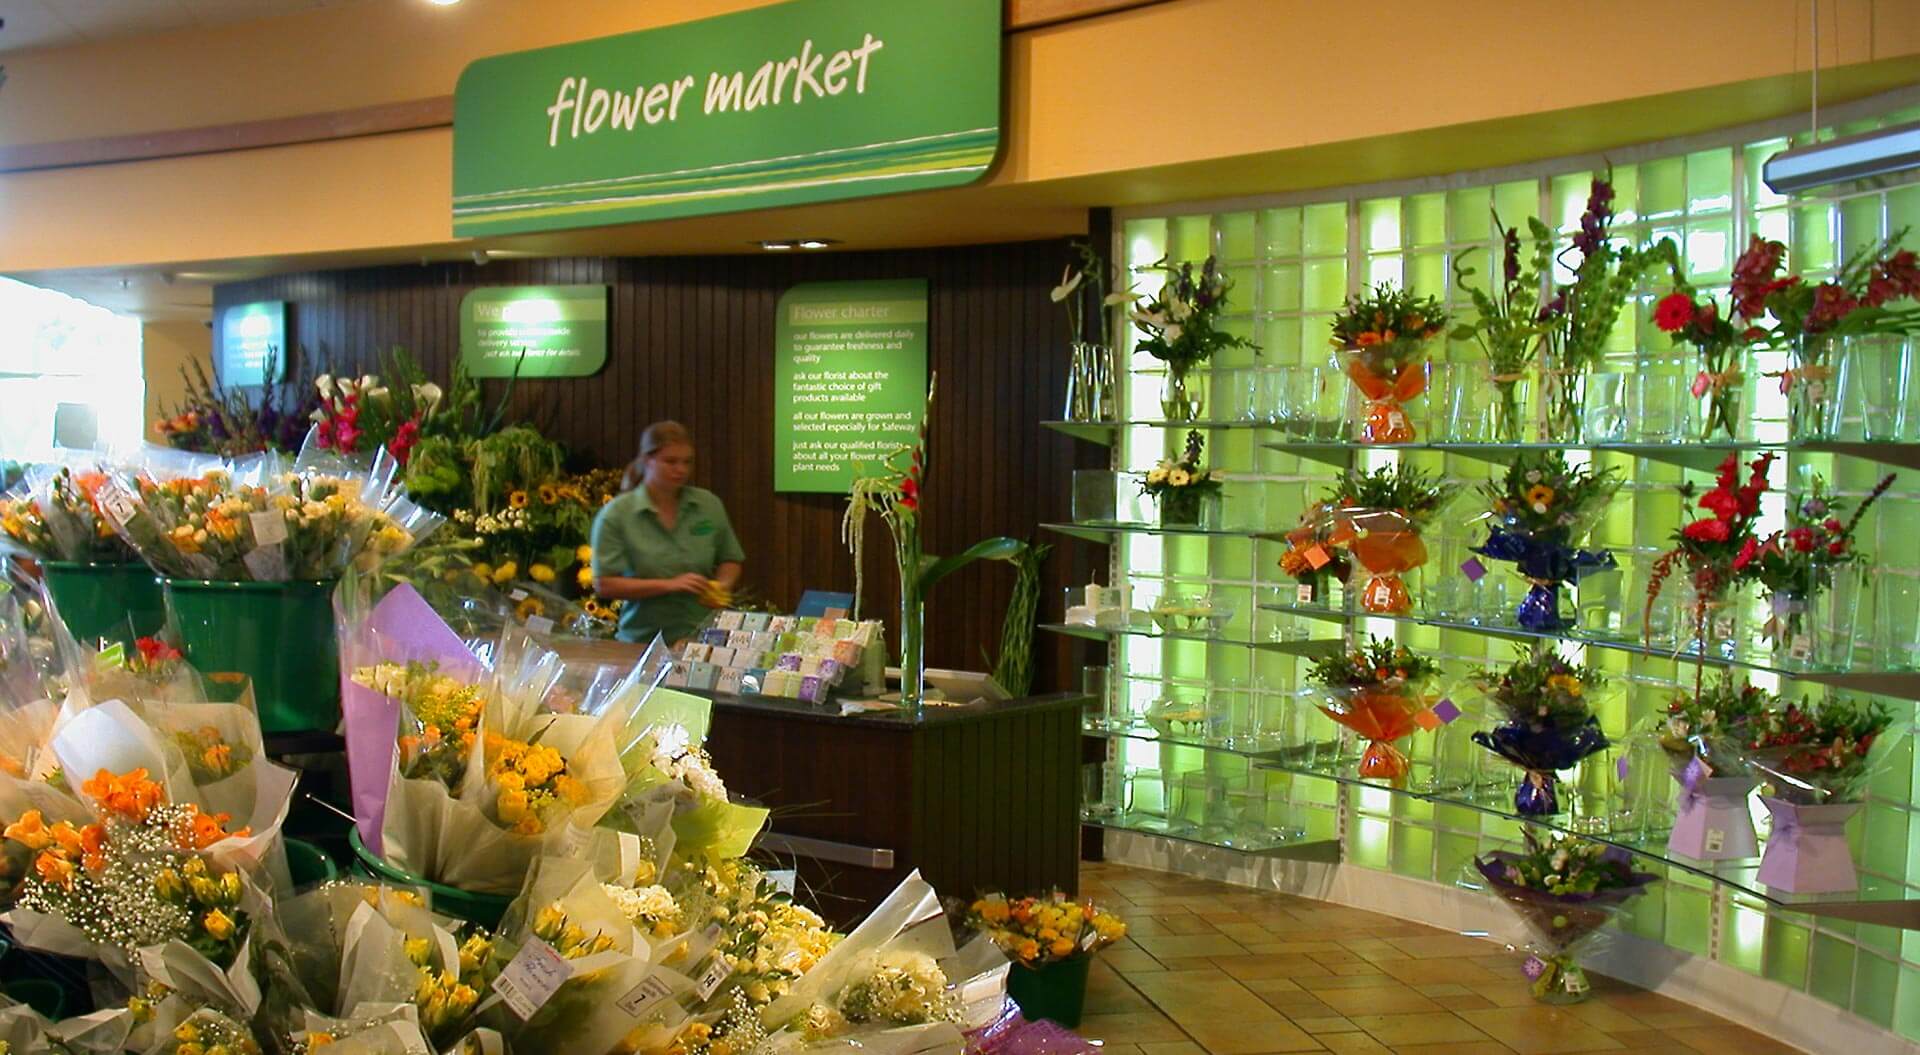 Safeway supermarket interior store design and branding for flower market